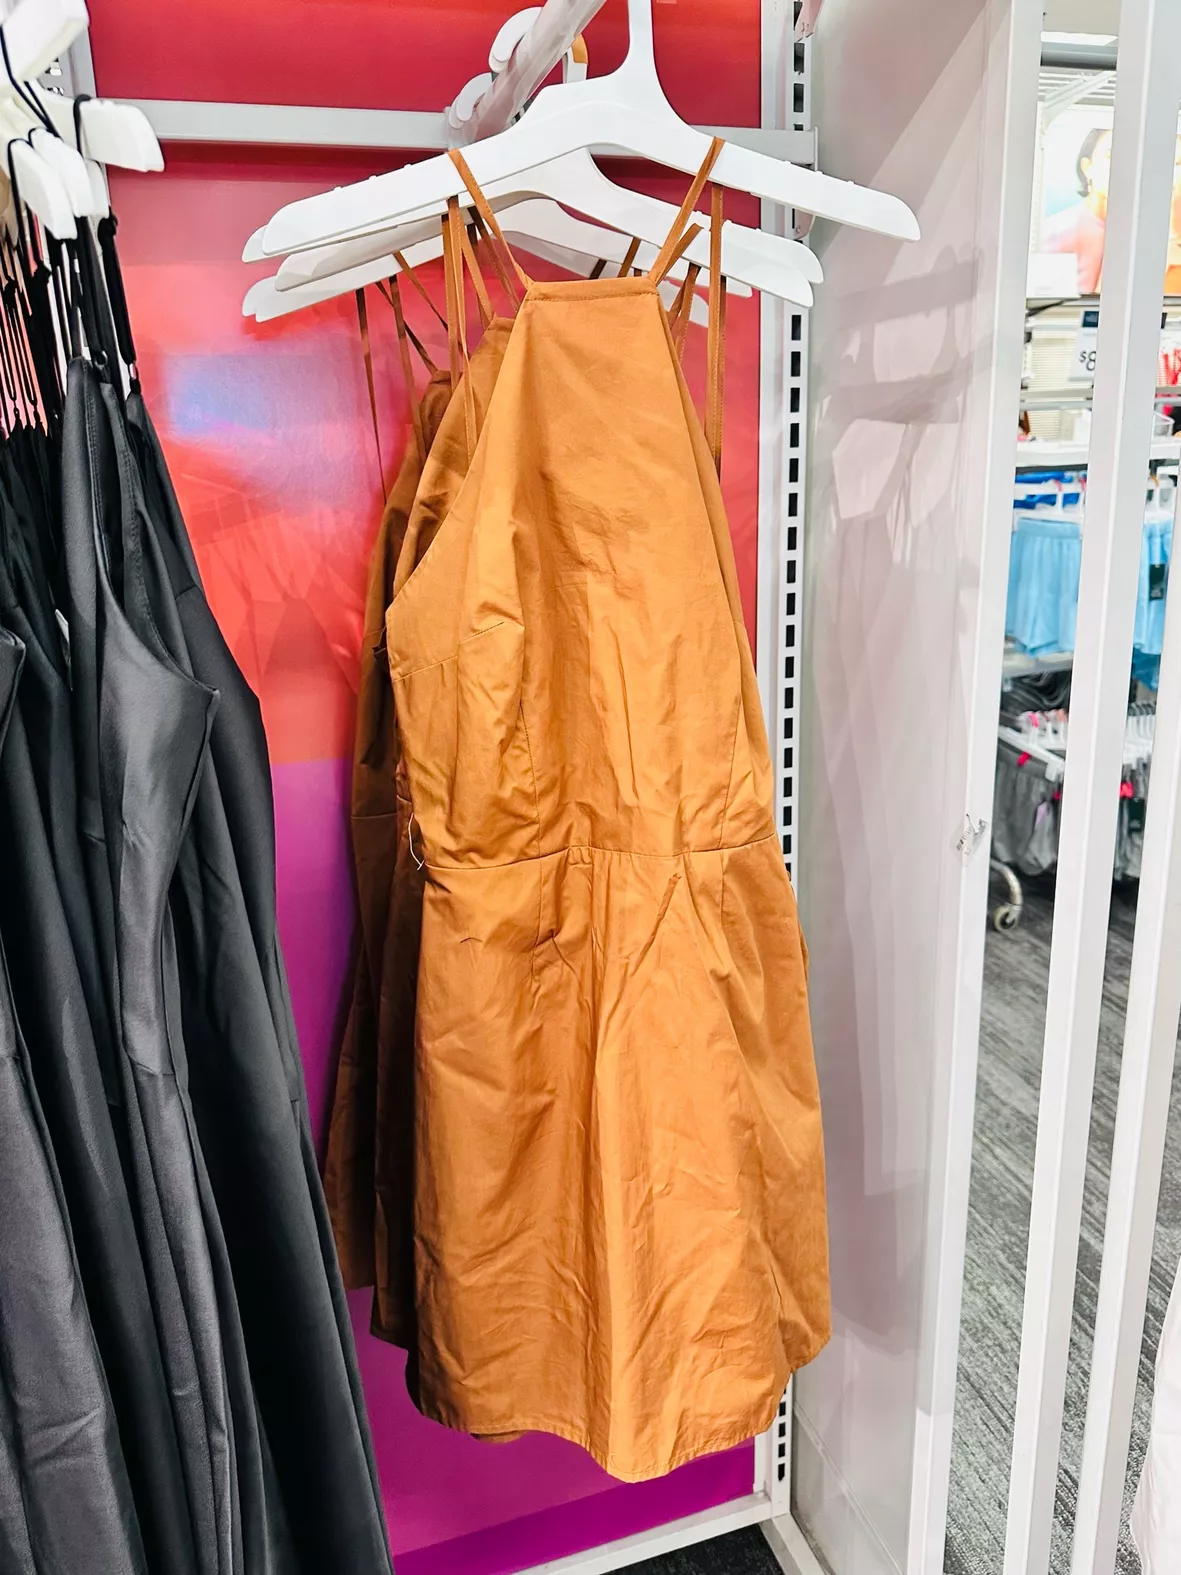 Shorts For Under Dresses : Target